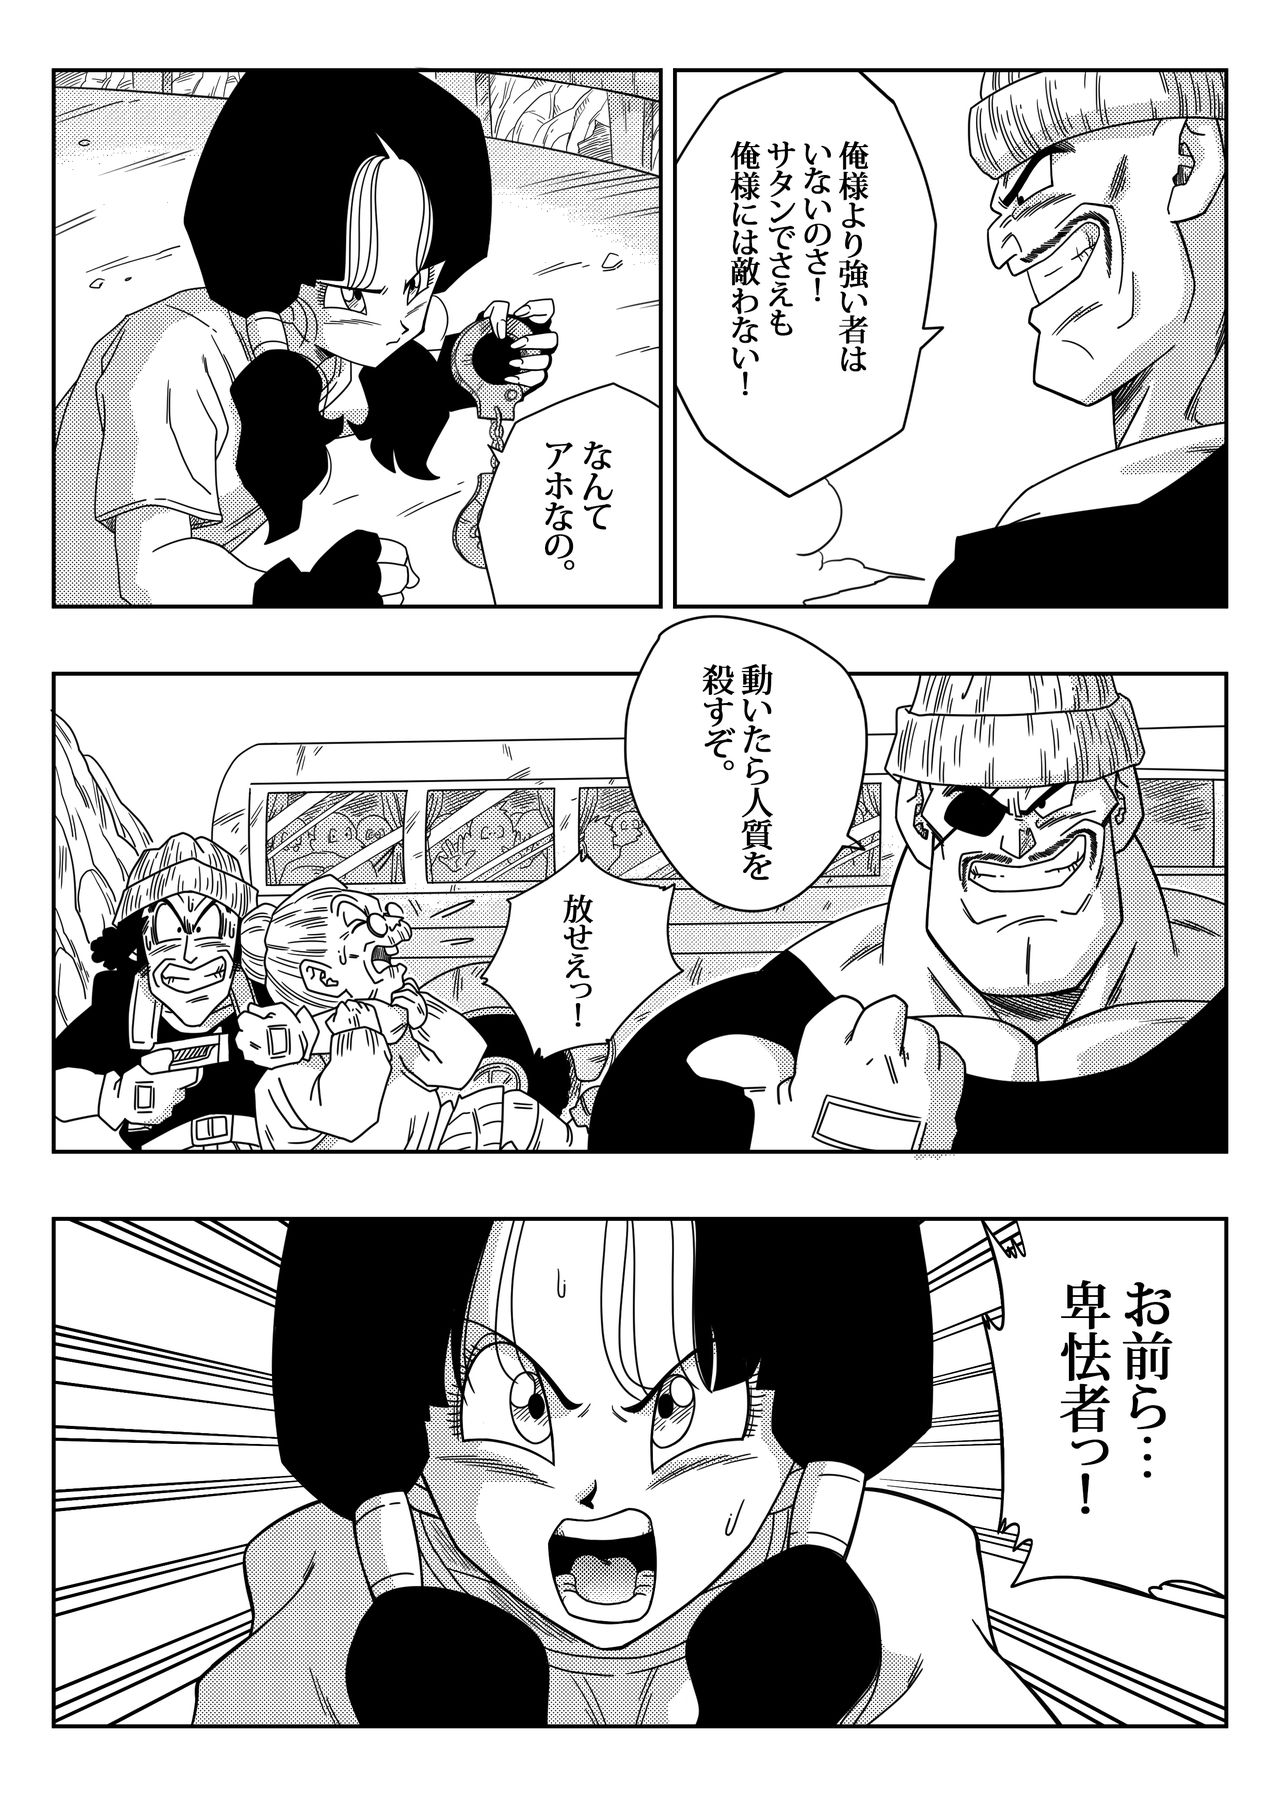 [Yamamoto] Heroine o Okashichae! (Dragon Ball Z) page 5 full